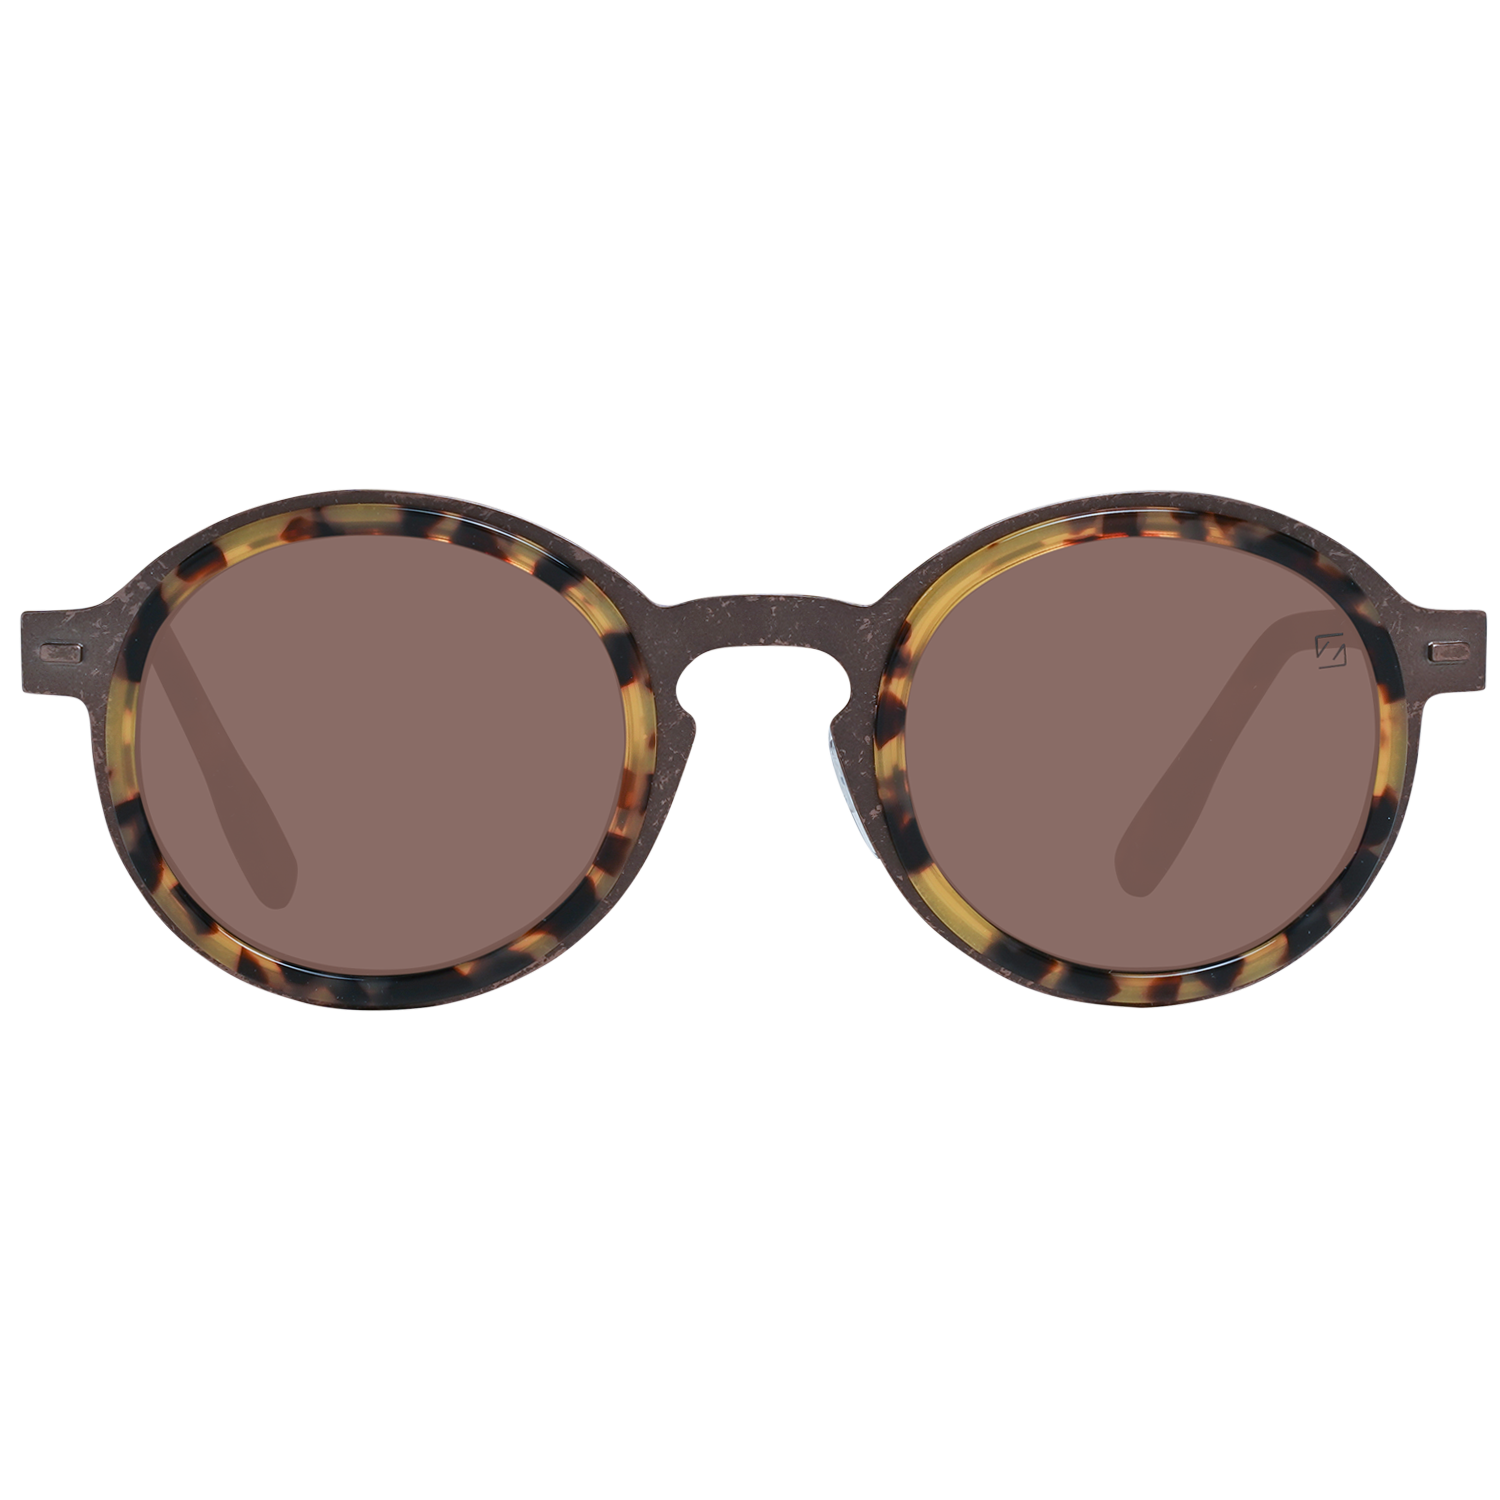 Zegna Couture Sunglasses Zegna Couture Sunglasses ZC0006 49 38M Titanium Eyeglasses Eyewear UK USA Australia 